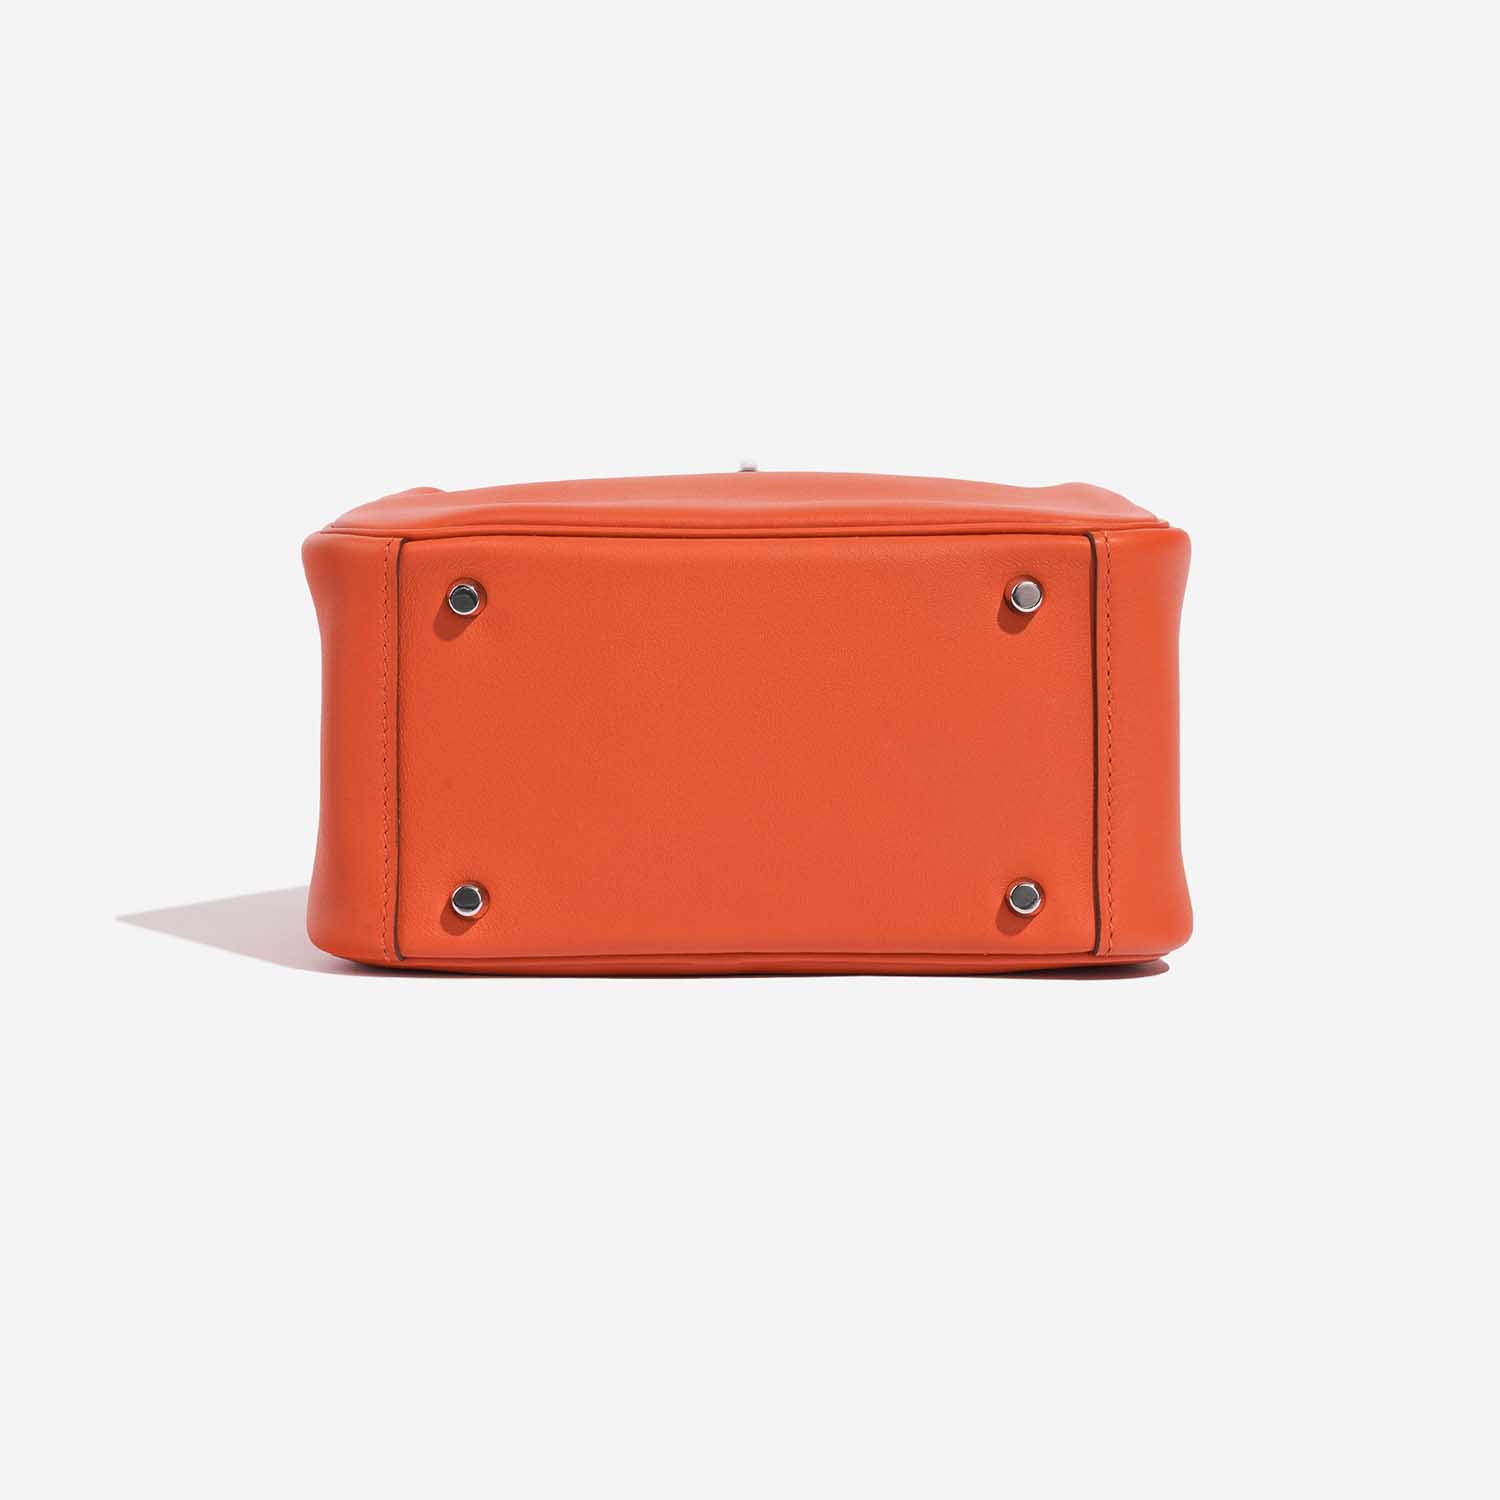 Assisi leather tote bag, Hermès Lindy Handbag 397955